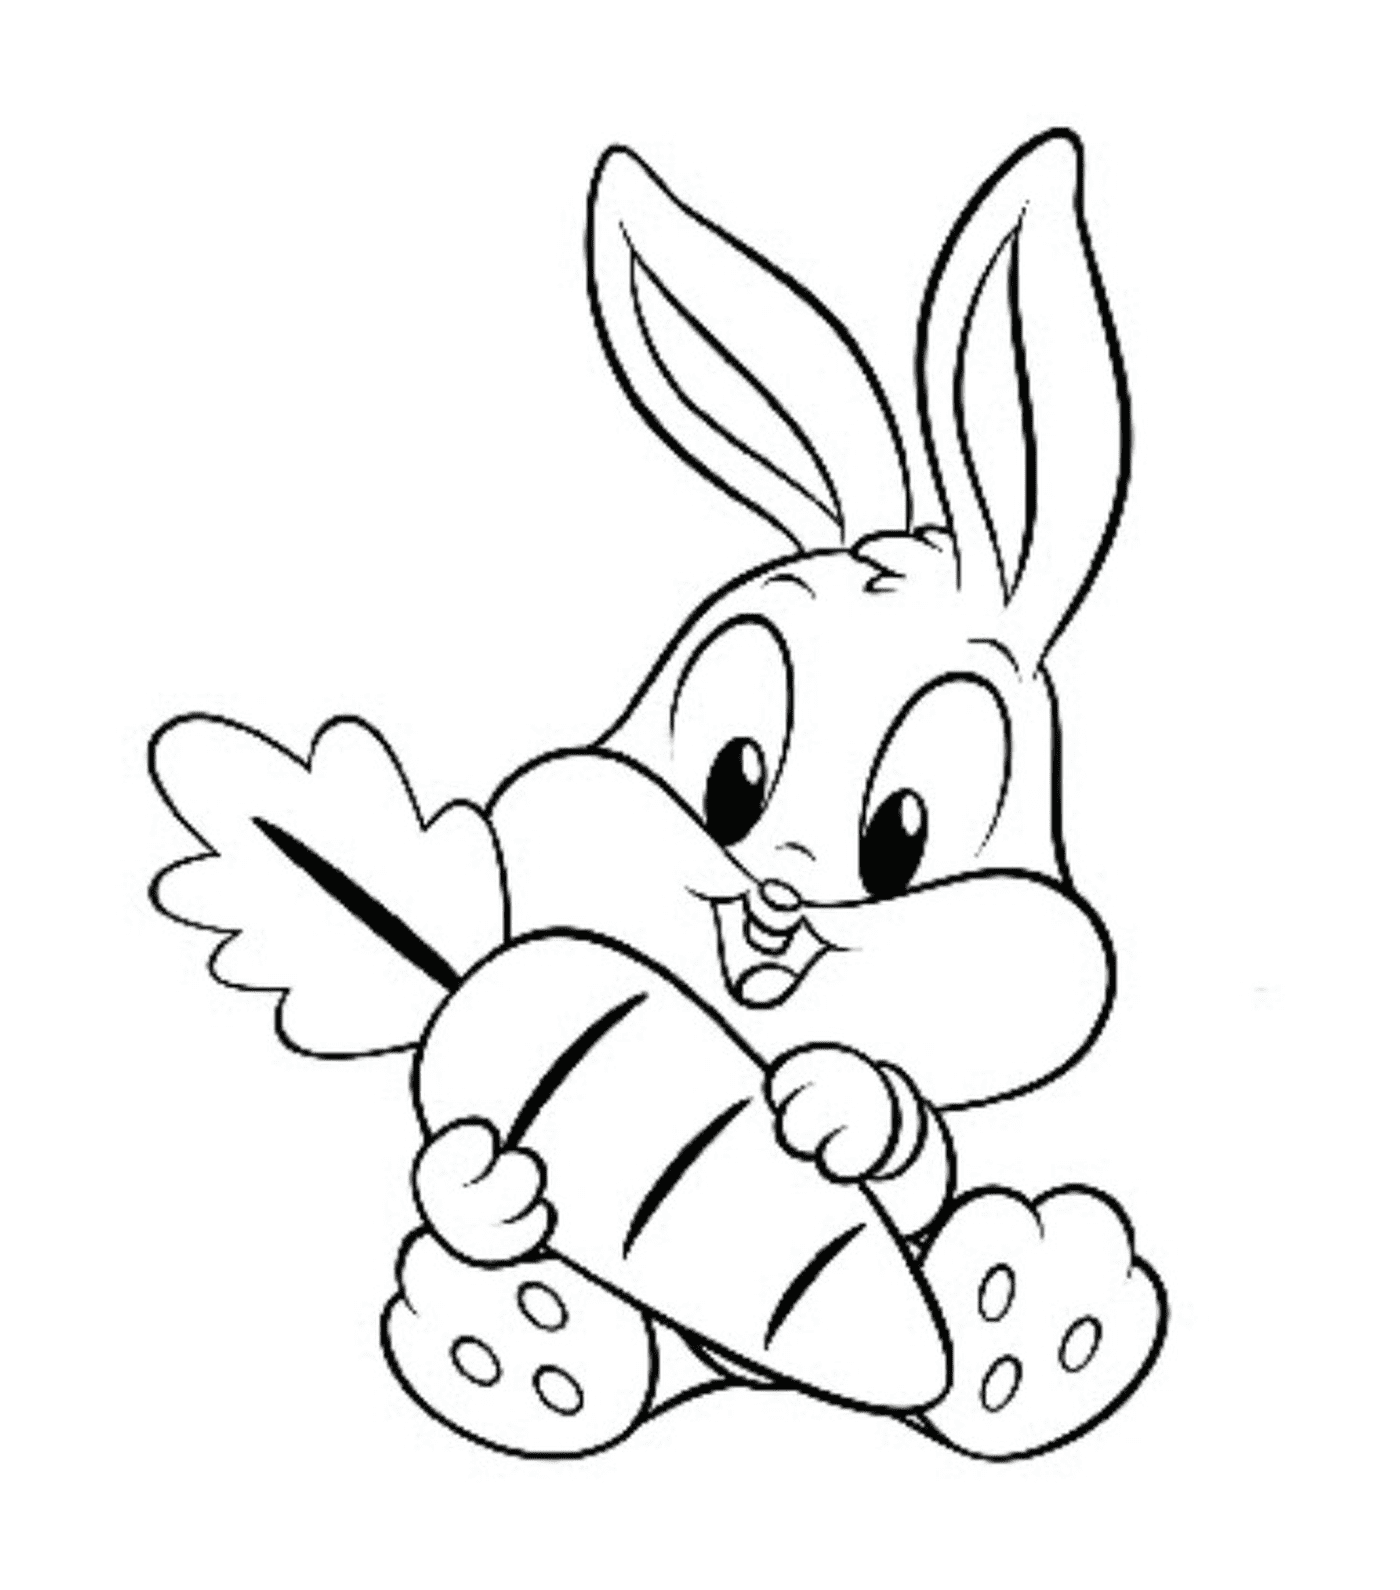  Un coniglio che tiene una grossa carota in bocca 